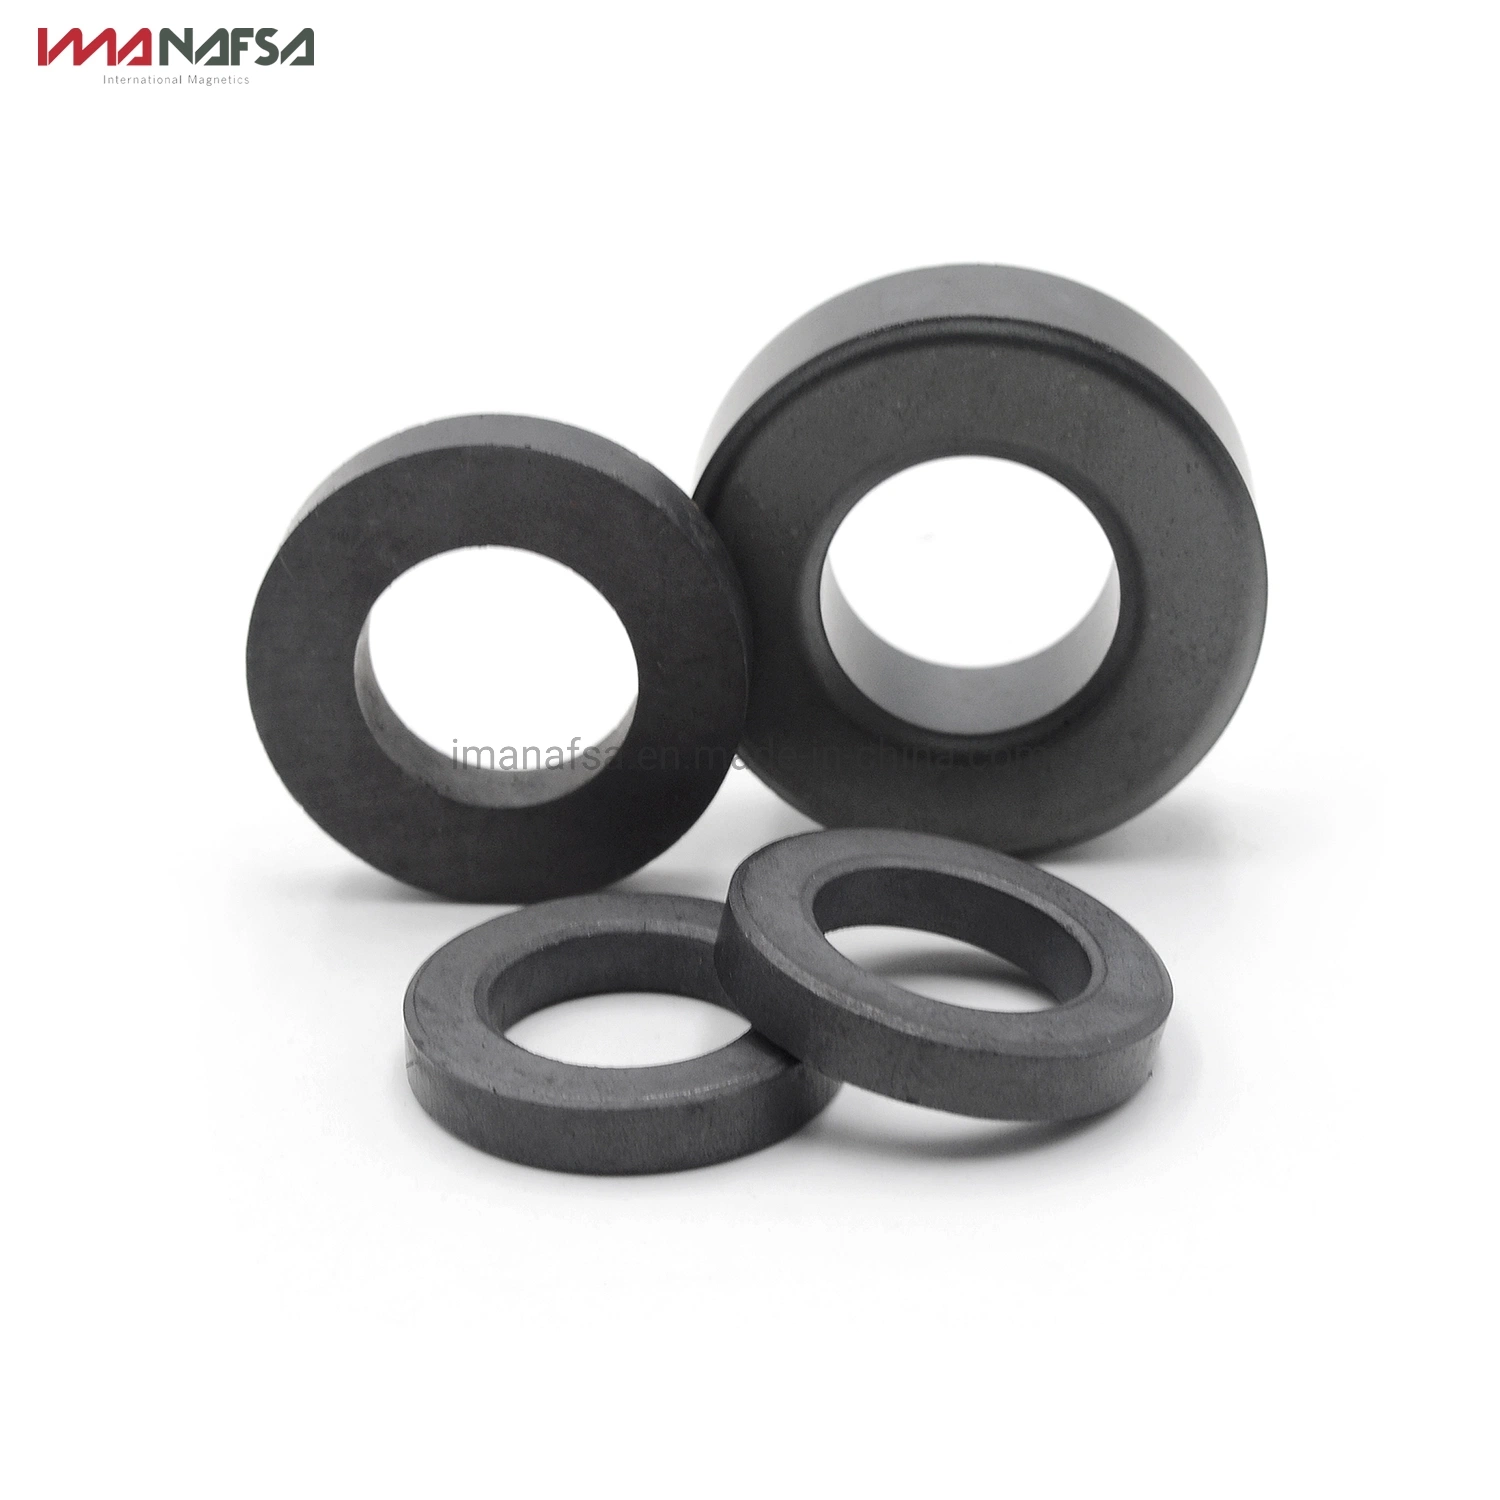 High Power Permanent Hard Ferrite Ring Magnets for Motor/Speaker